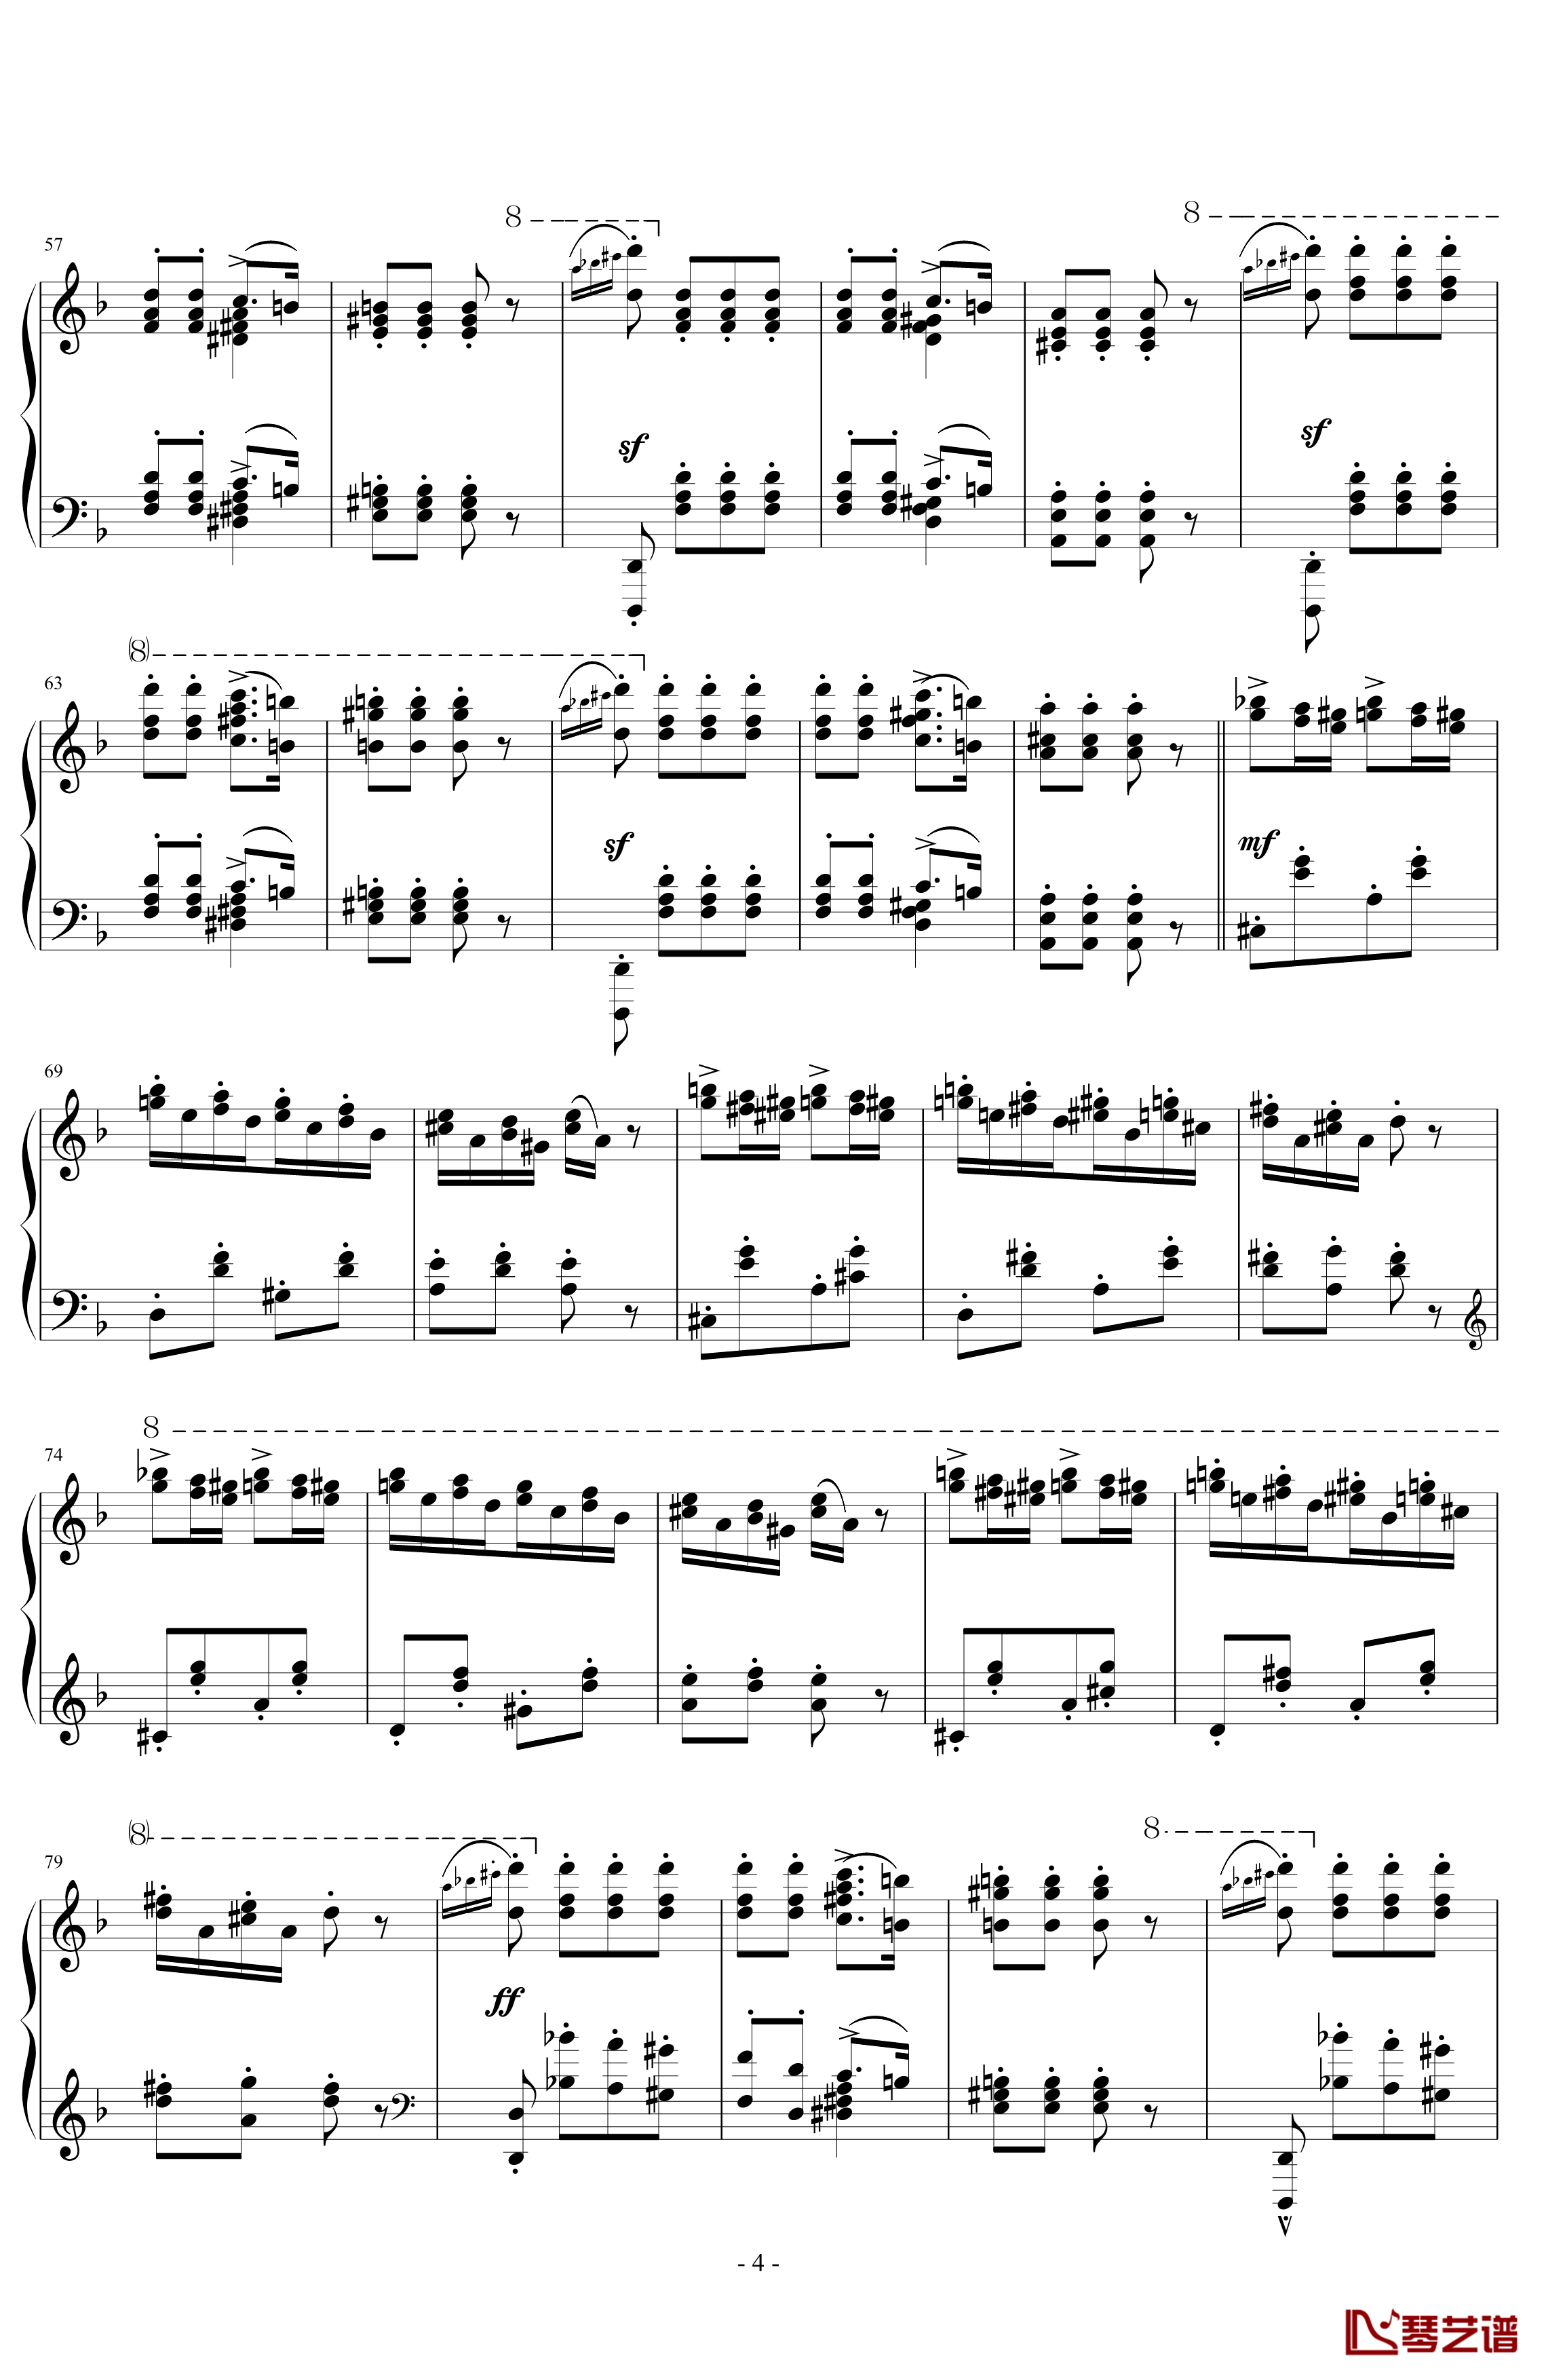 匈牙利狂想曲第7号钢琴谱-一首欢快活泼的舞曲-李斯特4